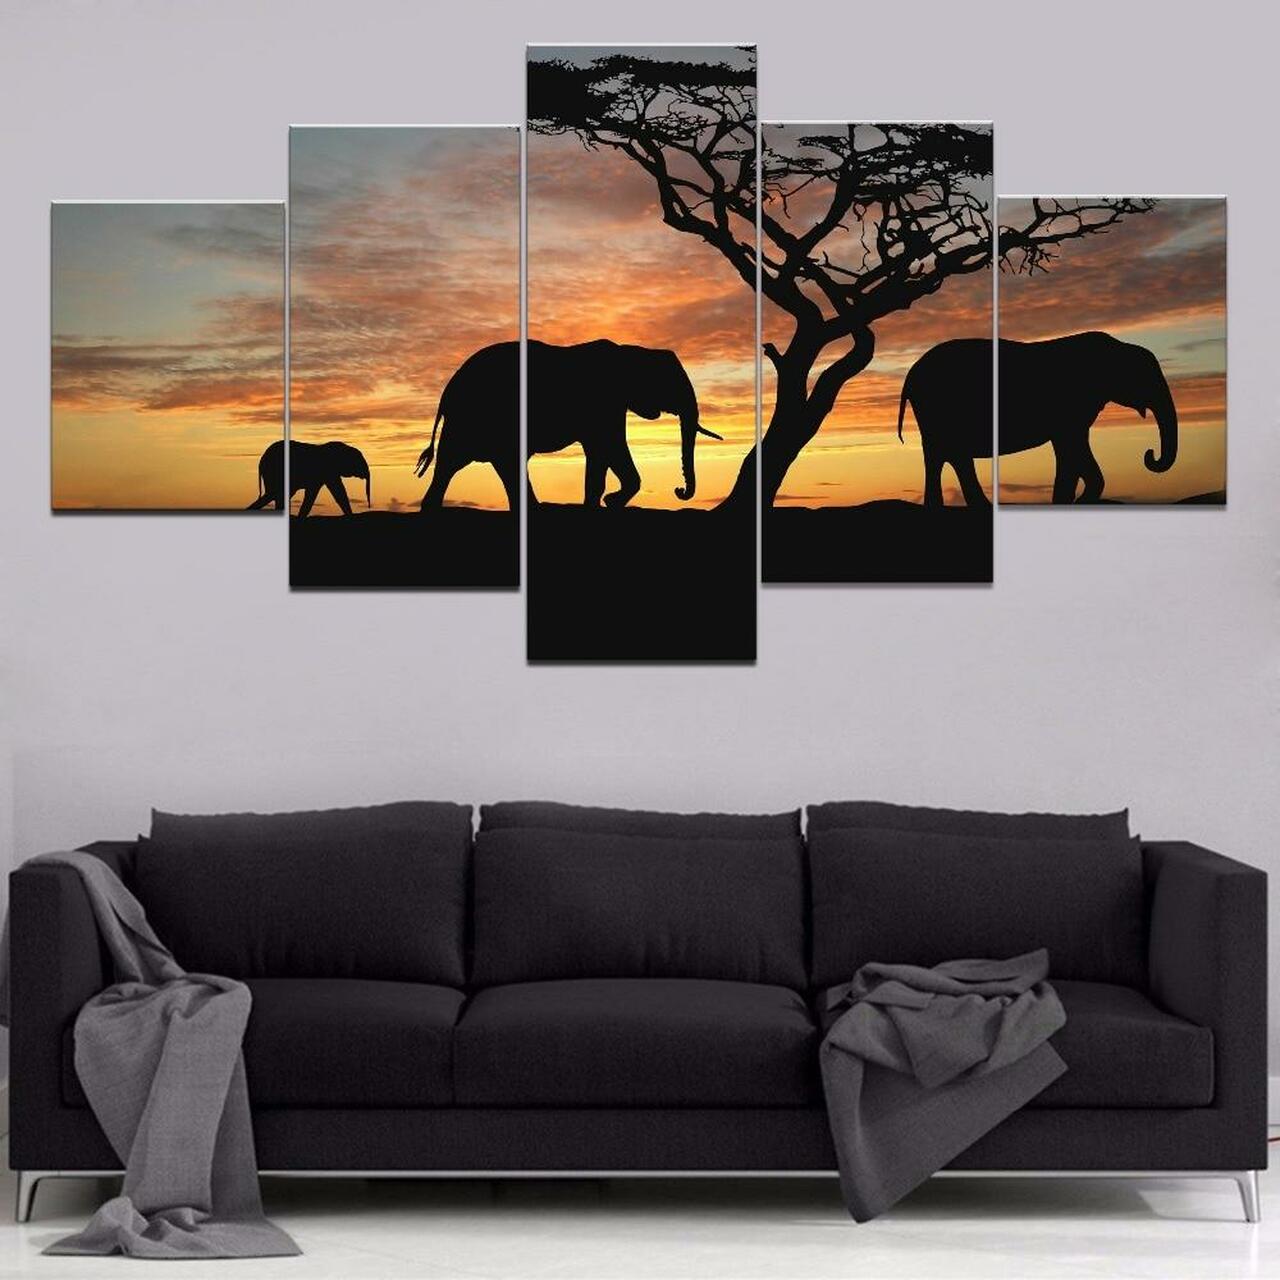 three elephants 5 pices peinture sur toile impression sur toile toile art pour la dcoration intrieureimkns